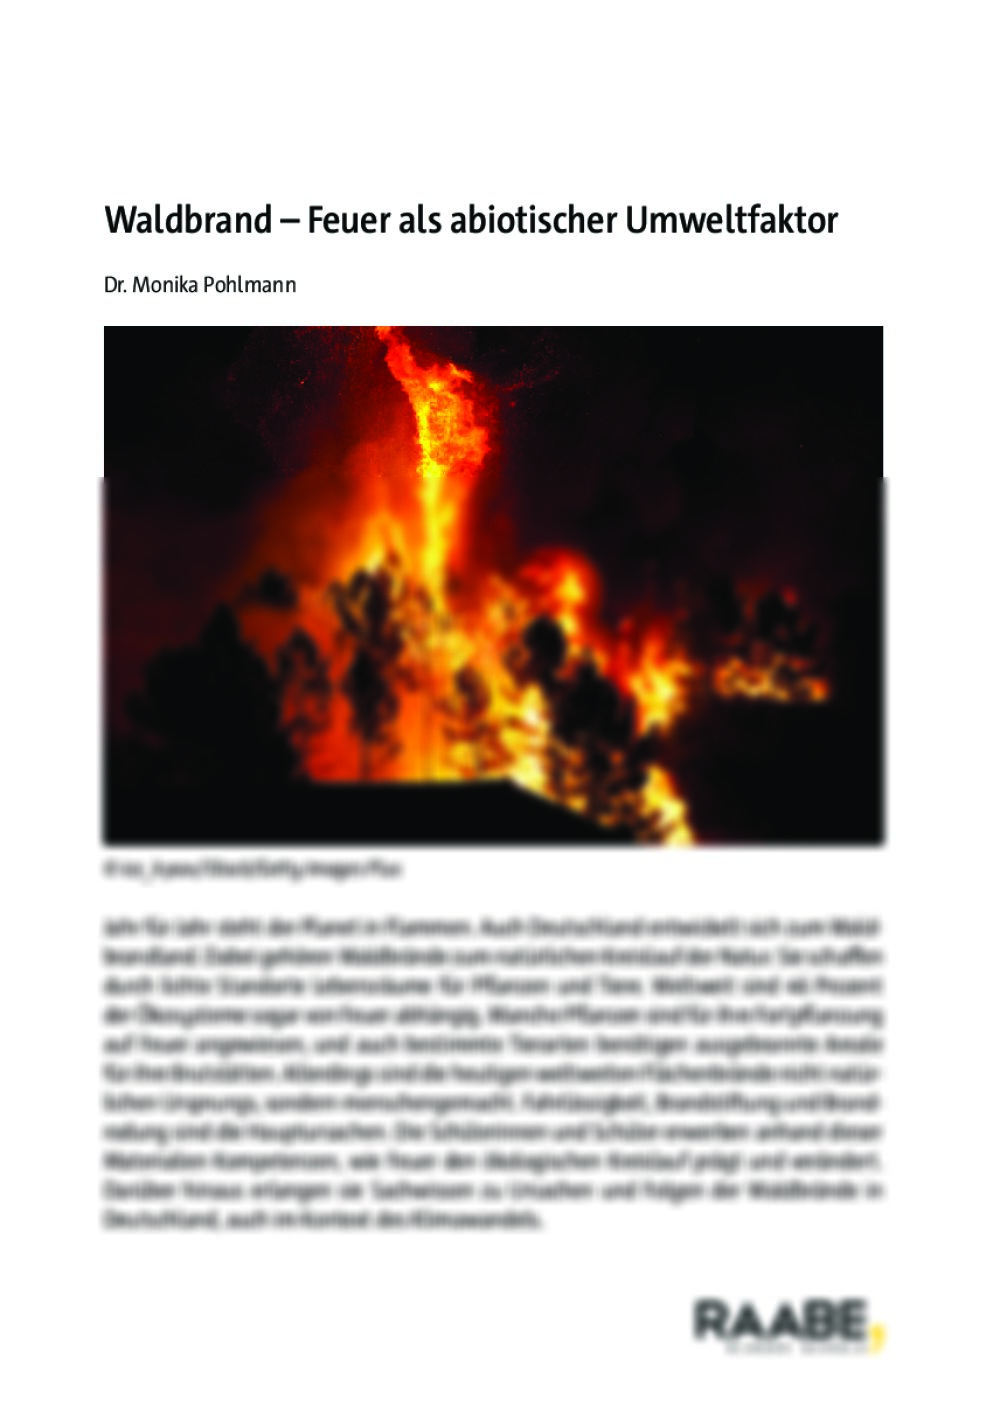 Waldbrand - Seite 1